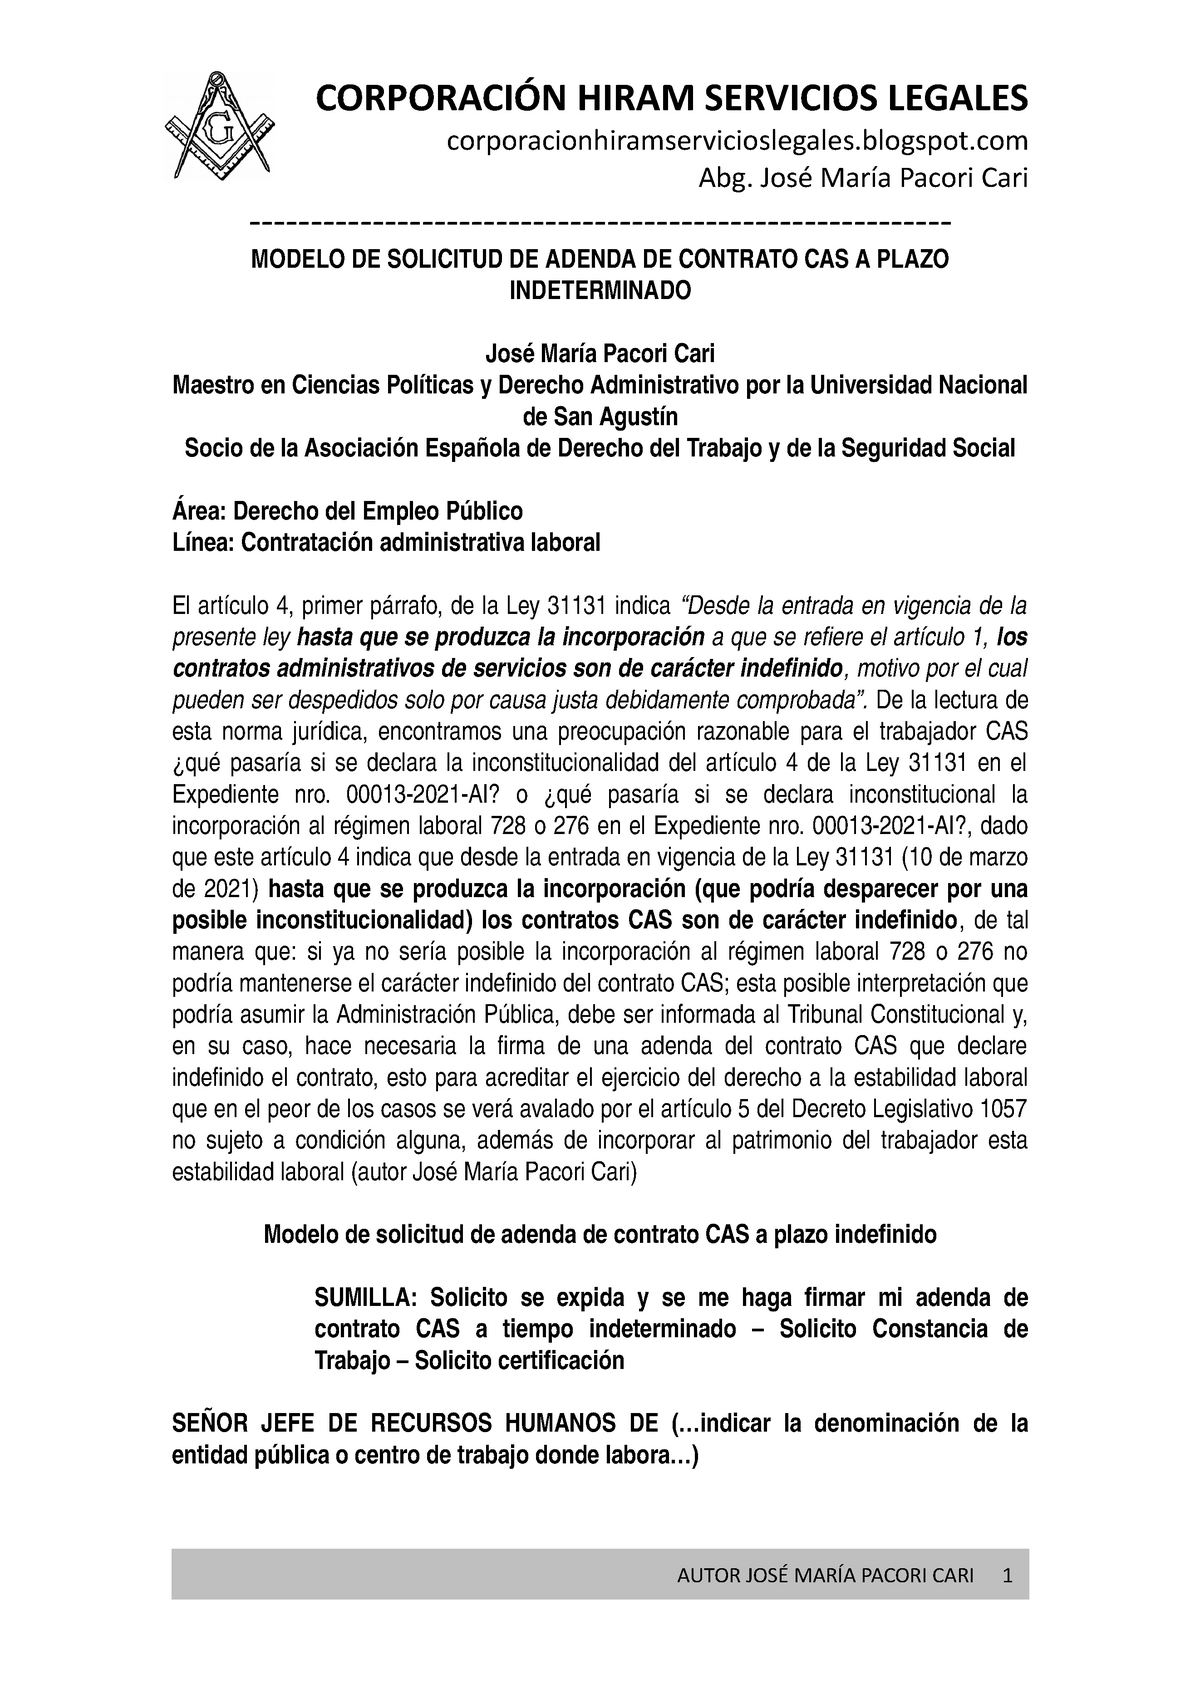 Modelo DE Solicitud Adenda Contrato CAS Indeterminado - Autor JOSÉ María  Pacori CARI - - Studocu